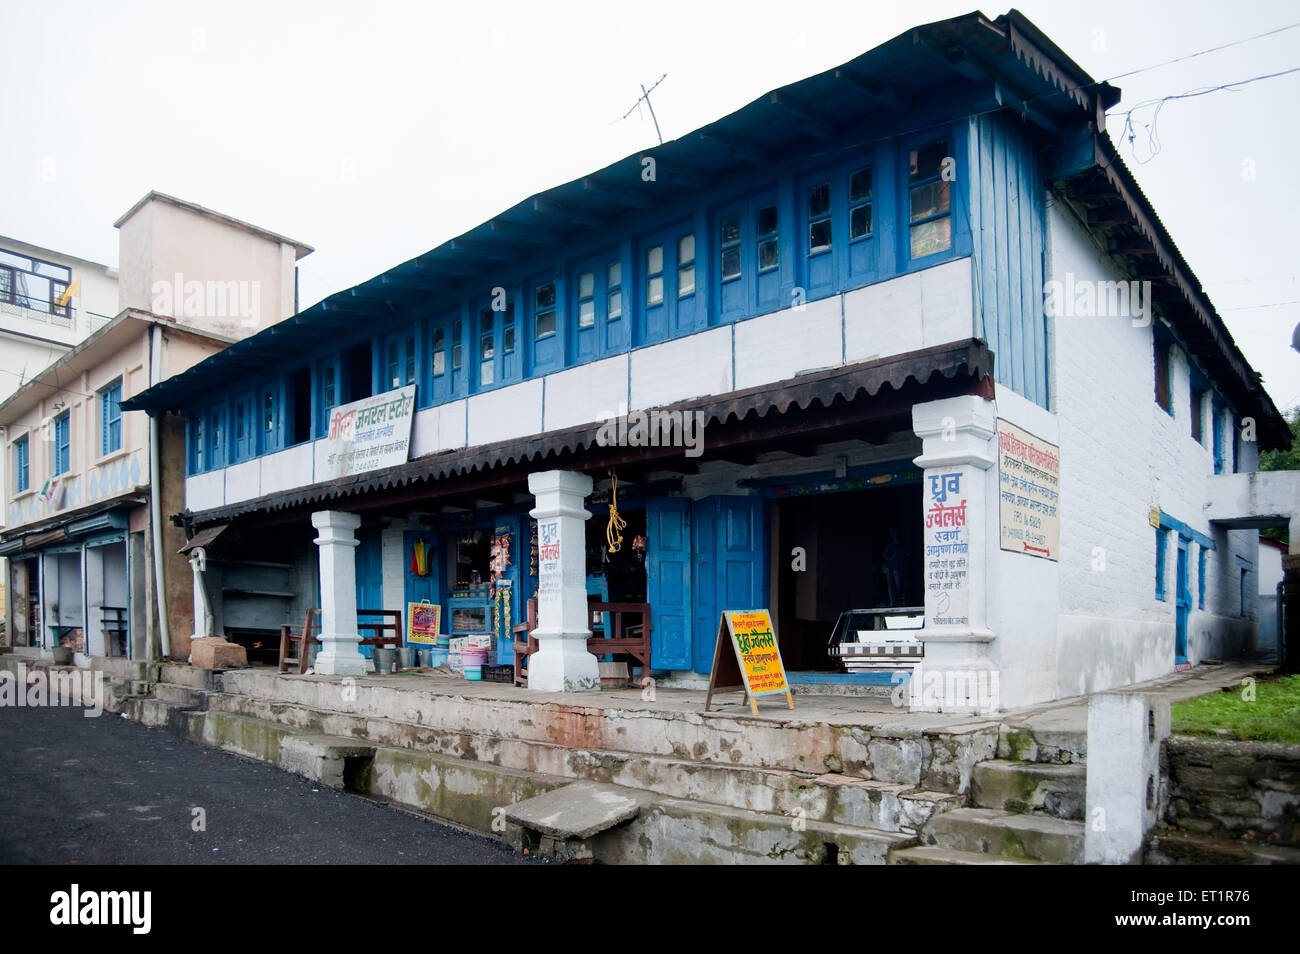 Comp shop, Digtoli, Pithoragarh, Uttarakhand